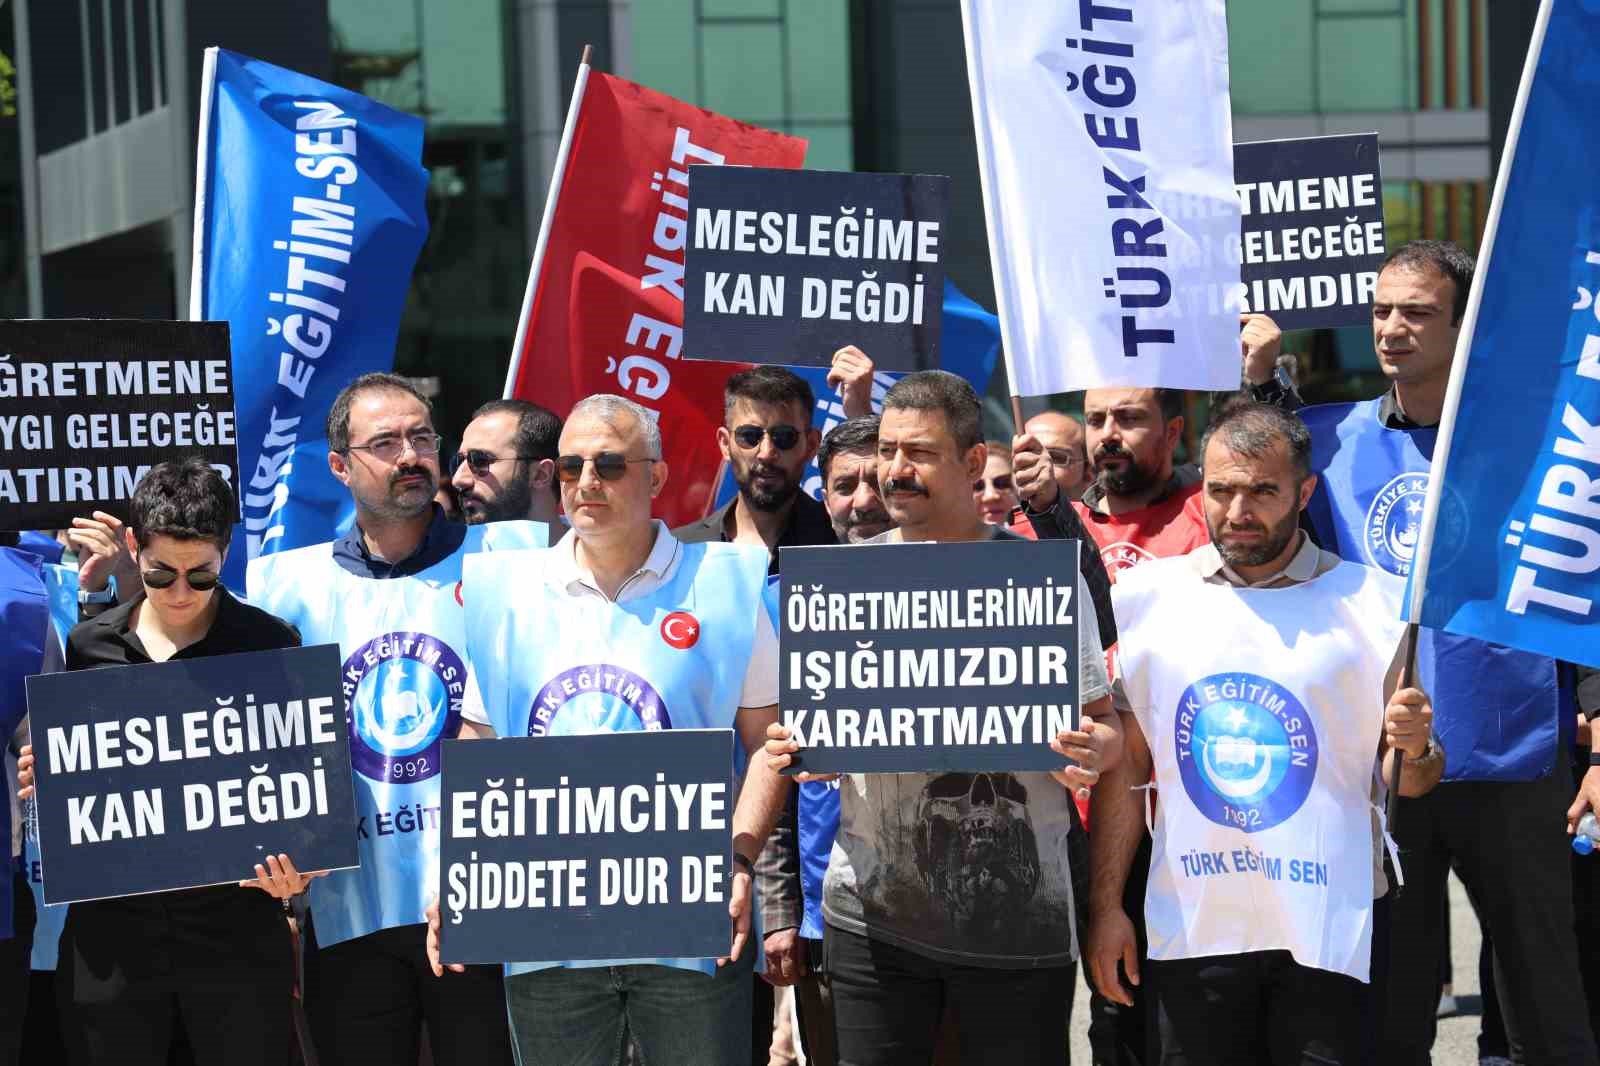 Diyarbakır’da eğitimciler kendilerine yönelik şiddete dikkat çekti
